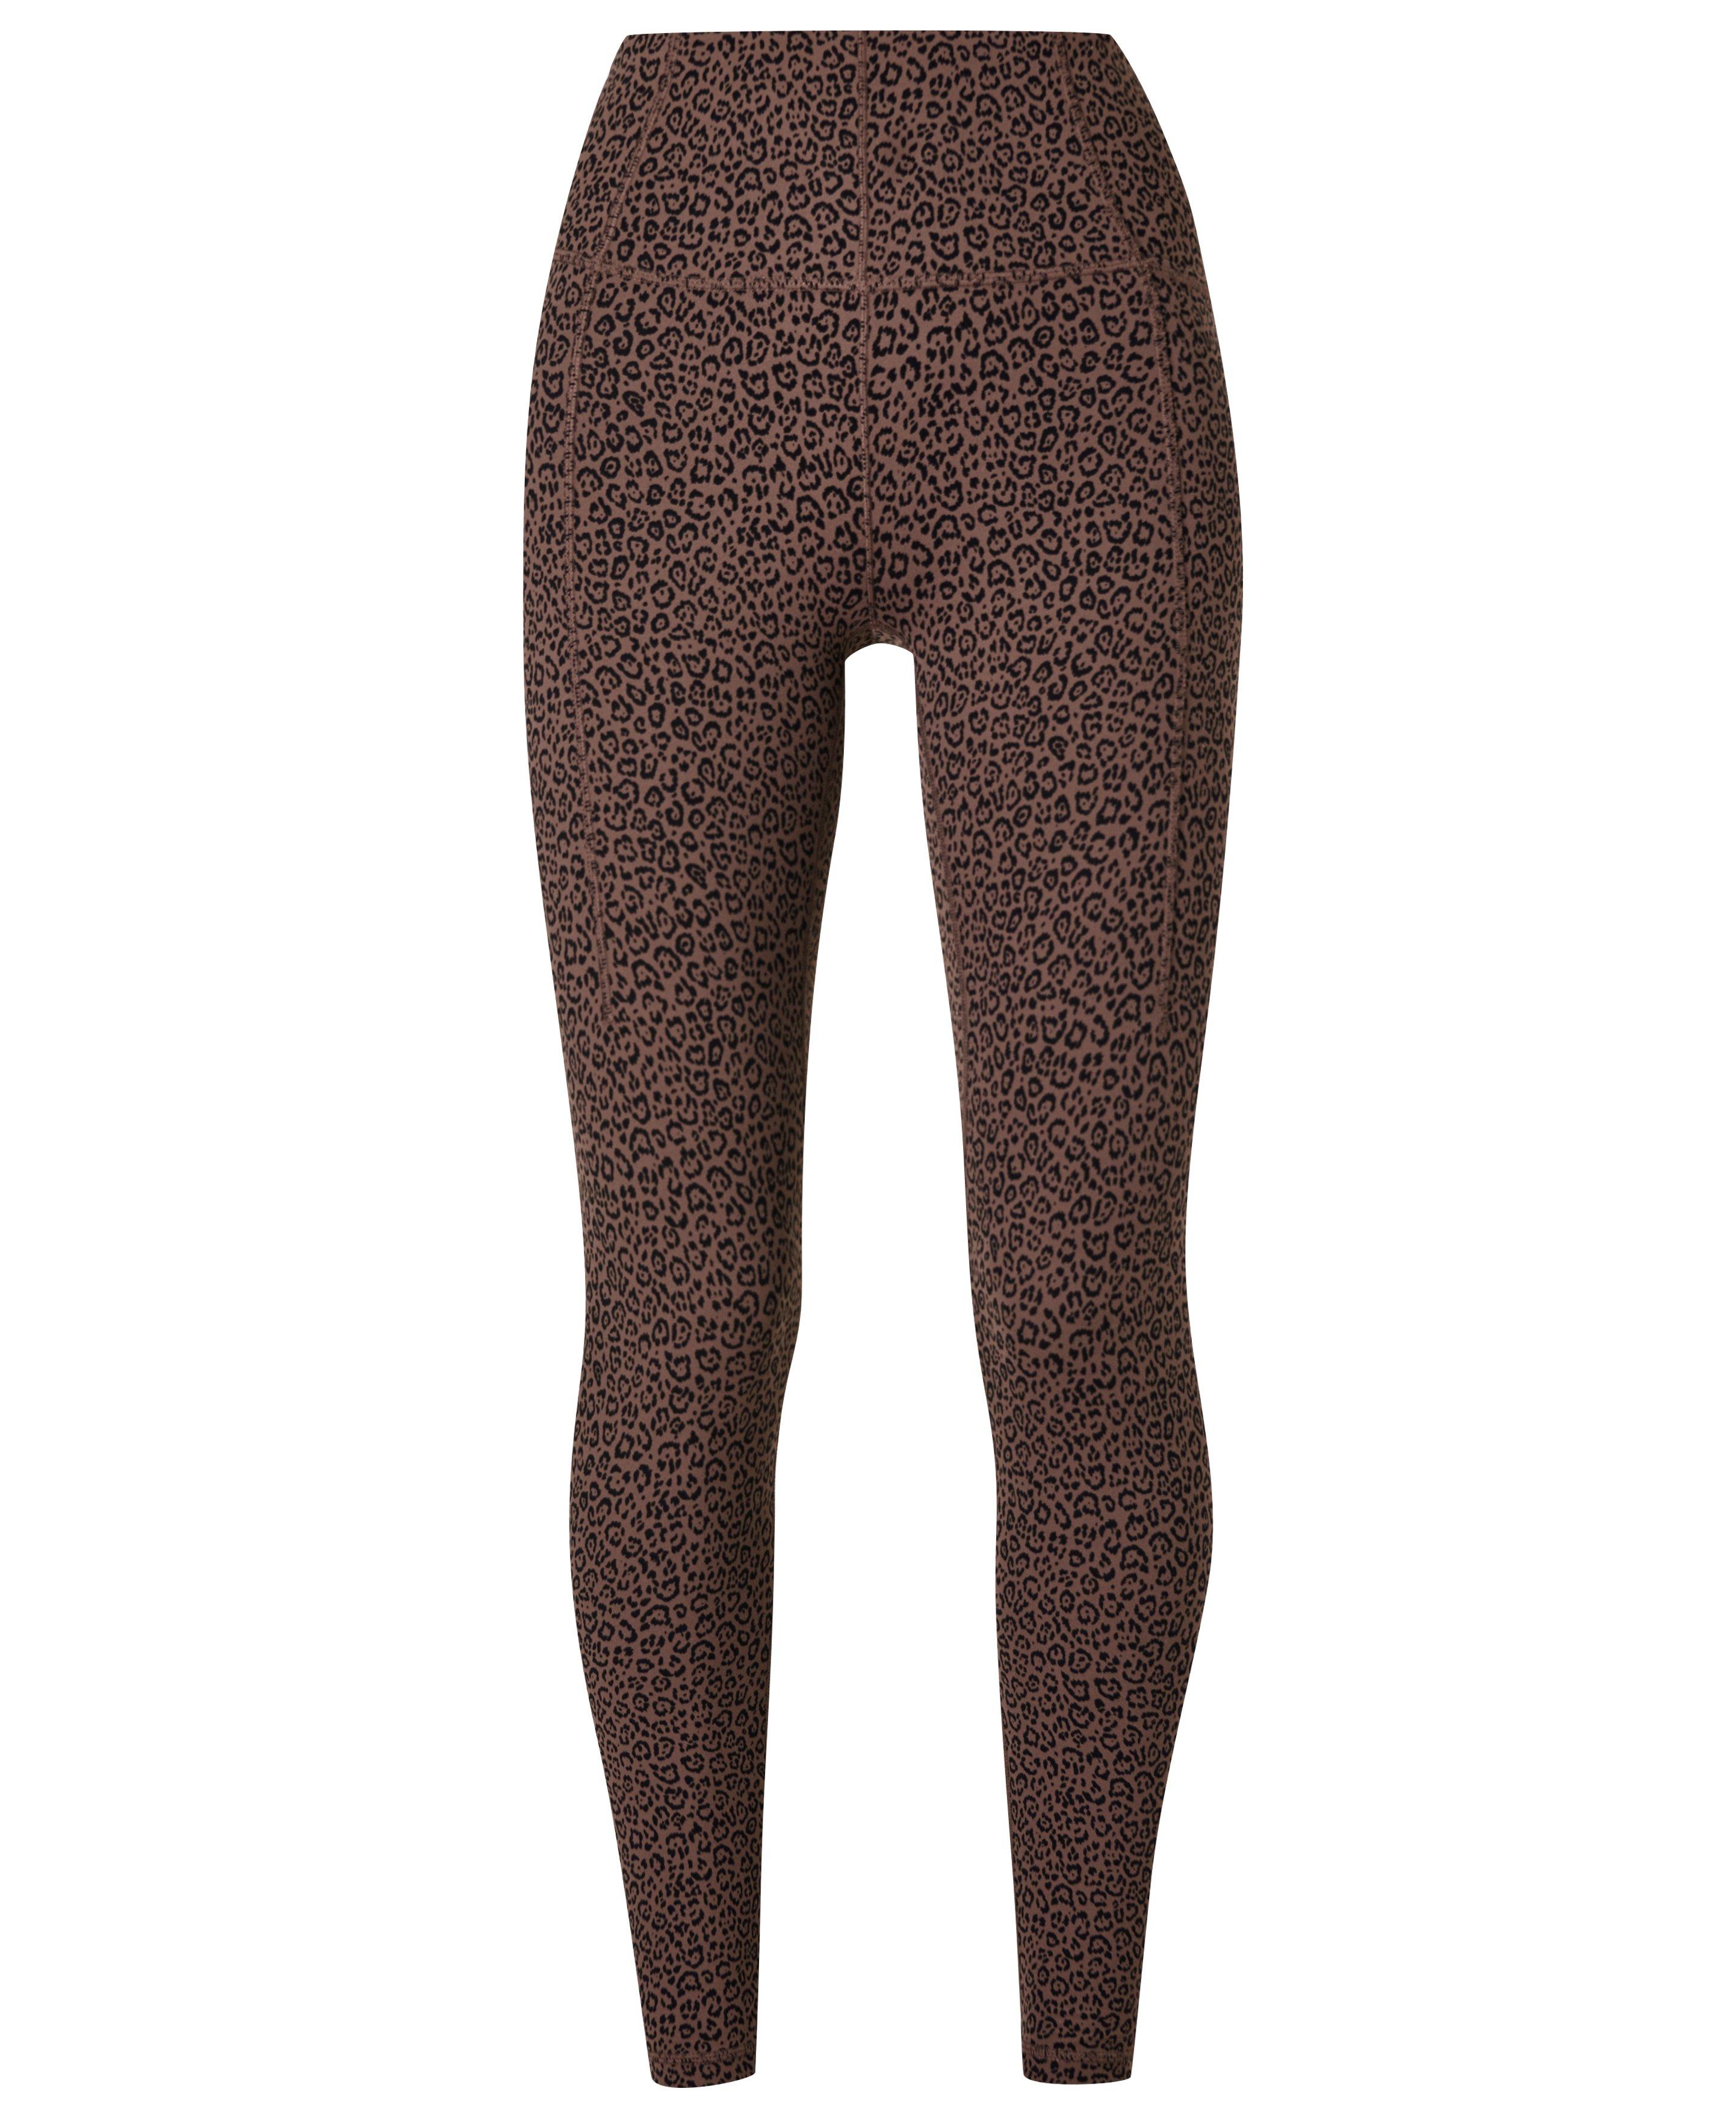 Core 10 Leopard Print Multi Color Brown Active Pants Size L - 67